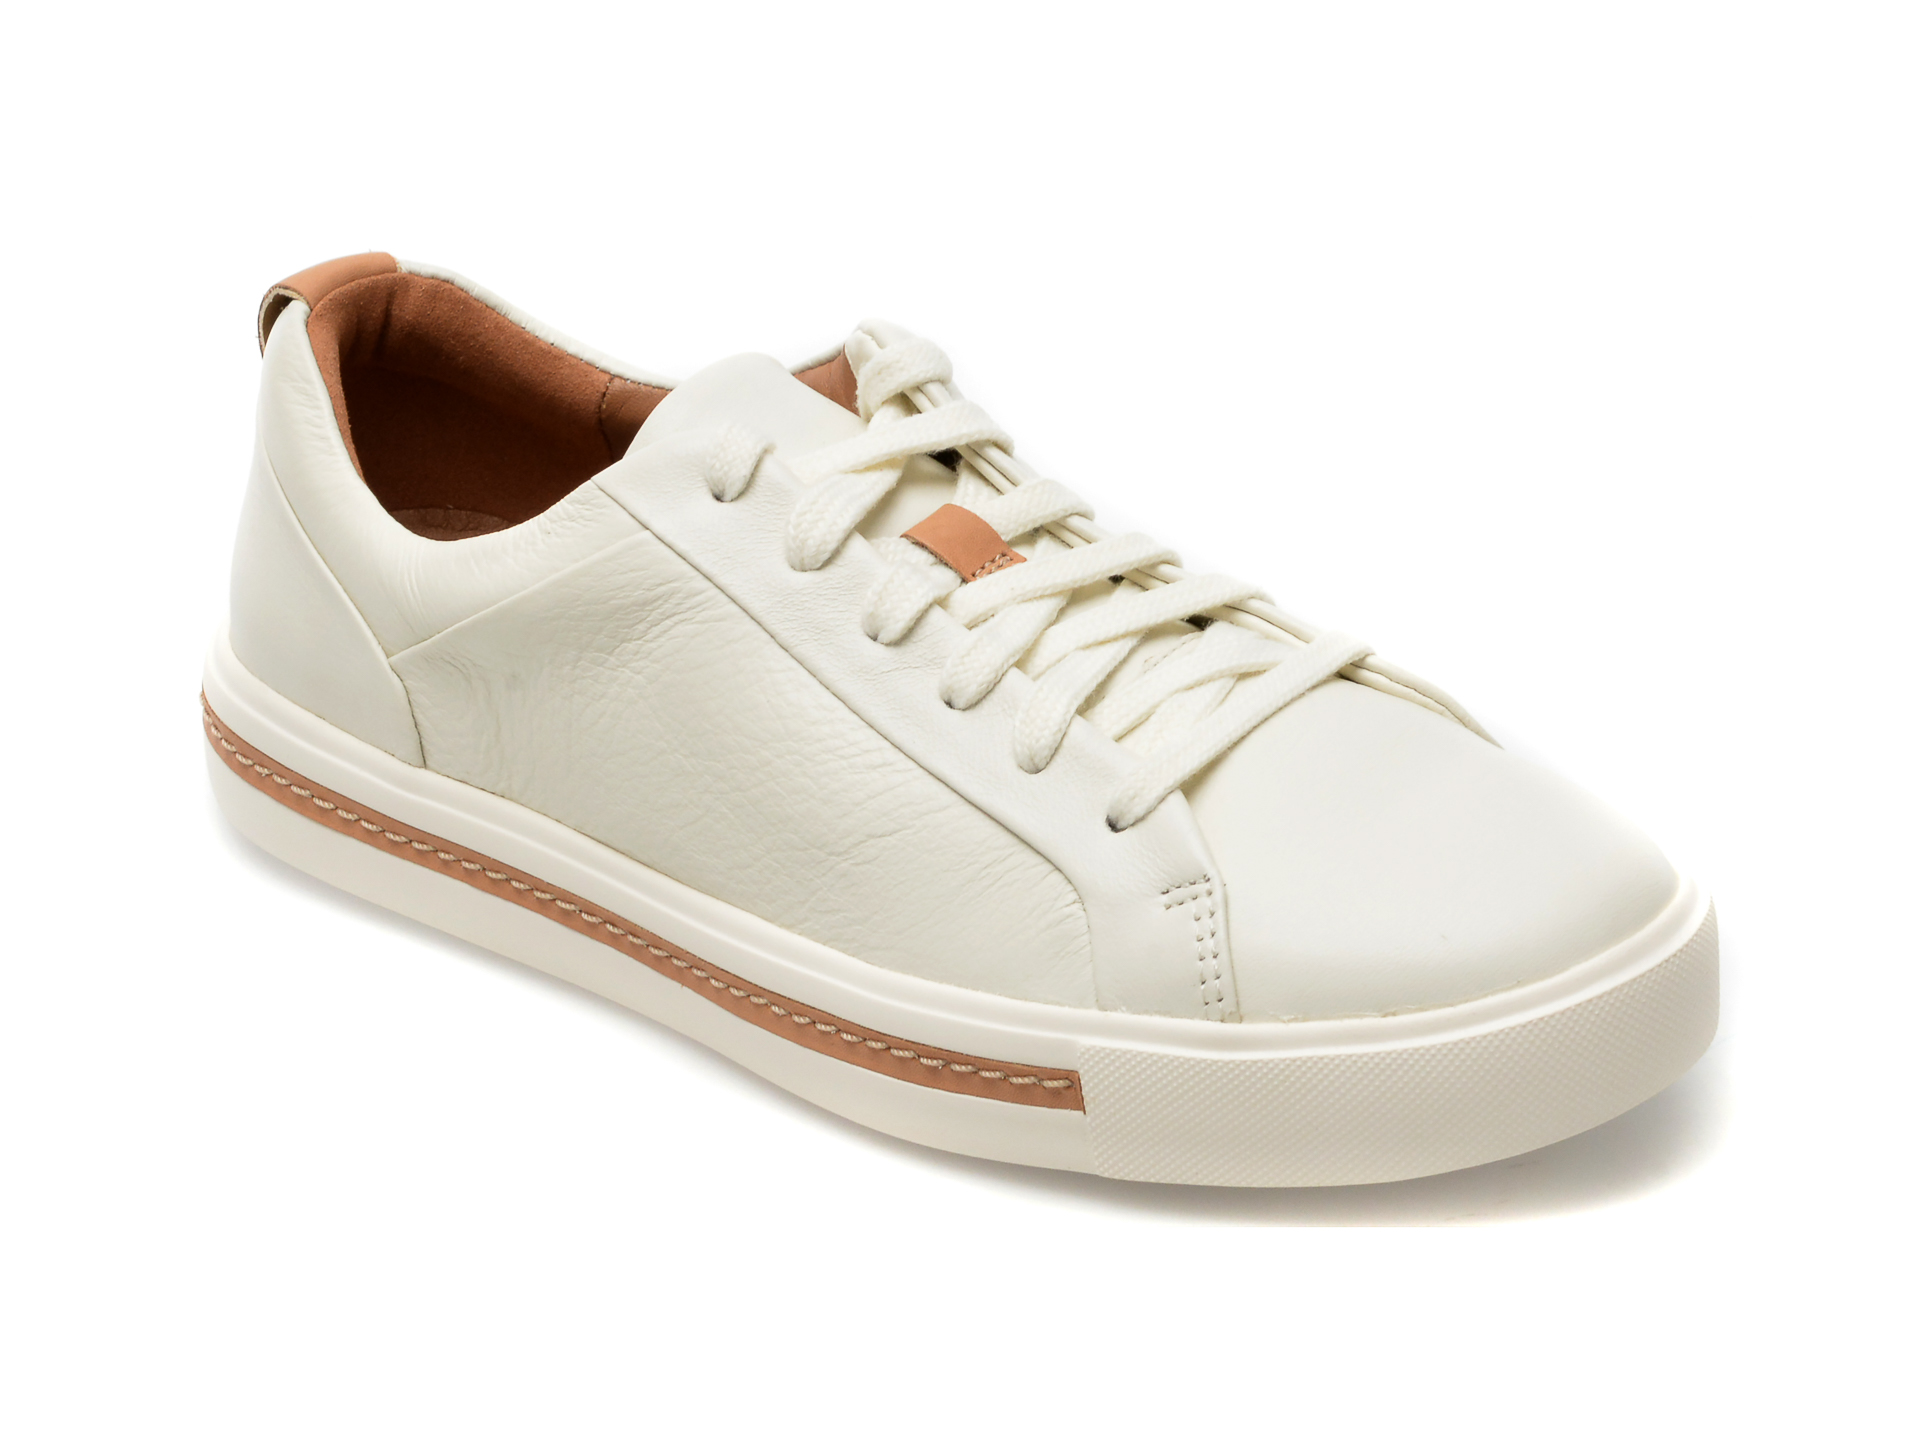 Pantofi CLARKS albi, UN MAUI LACE 13-N, din piele naturala Answear 2023-09-28